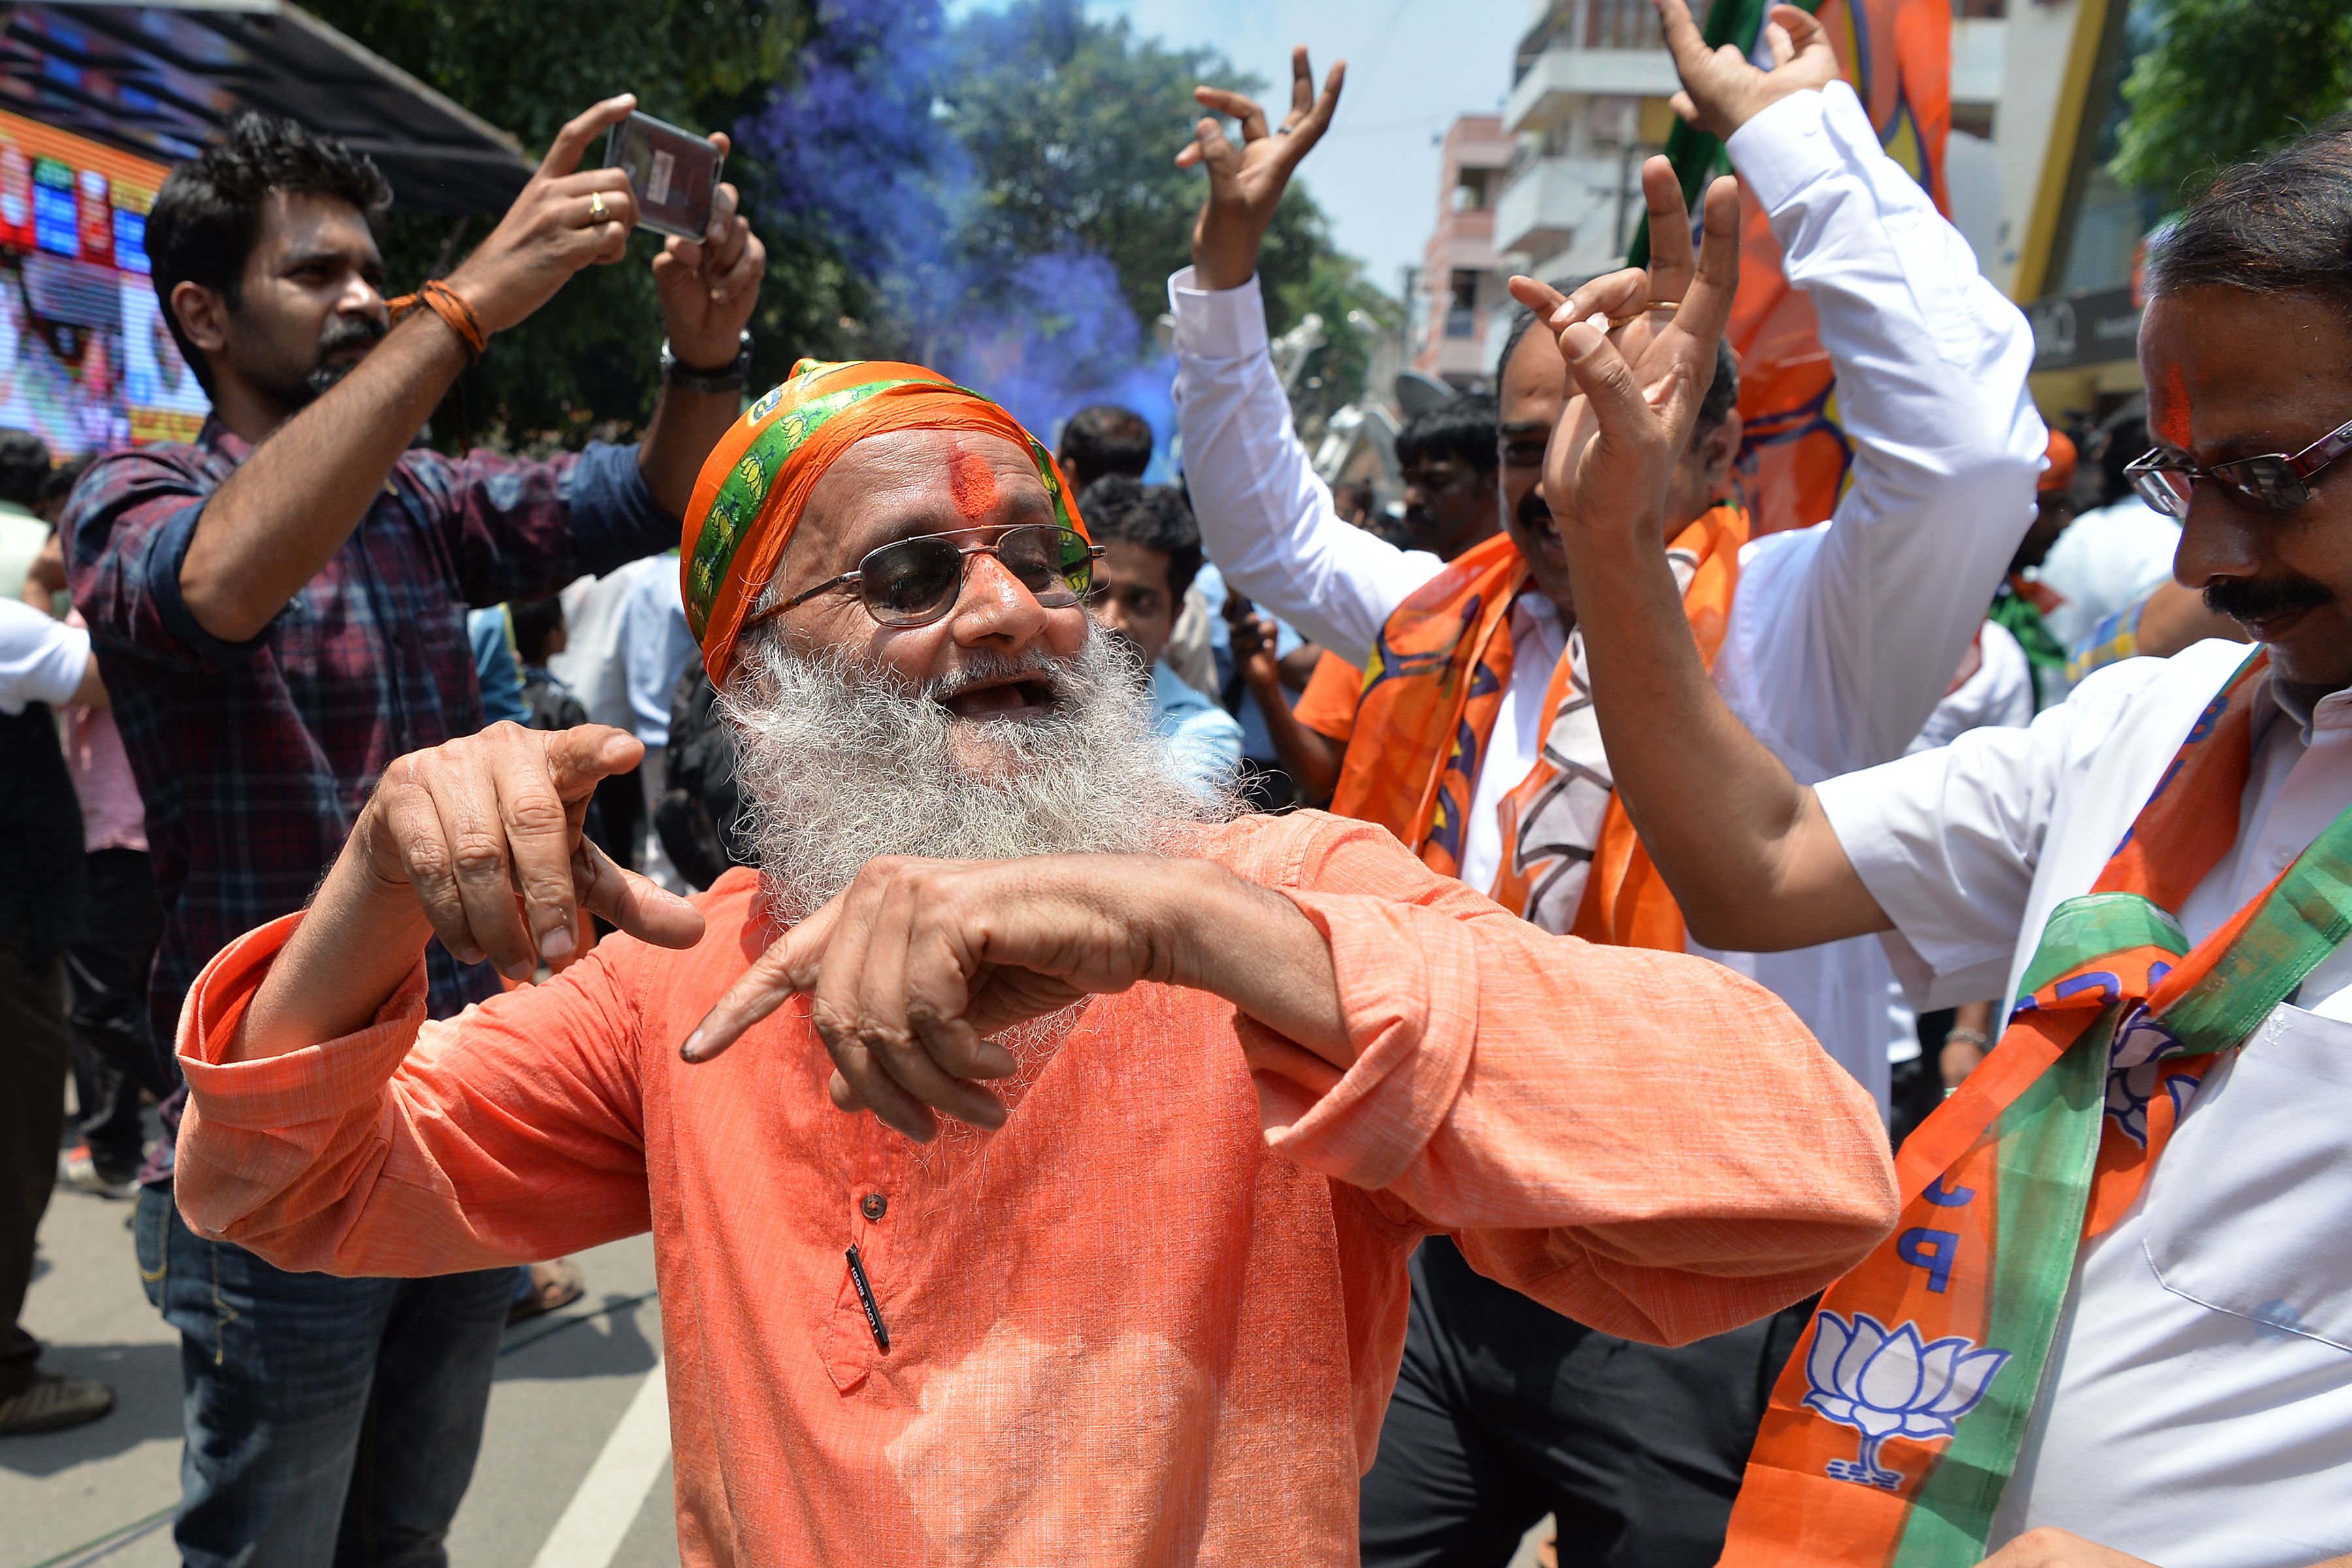 رجل عجوز يرقص خلال احتفالات الحزب الحاكم بالهند